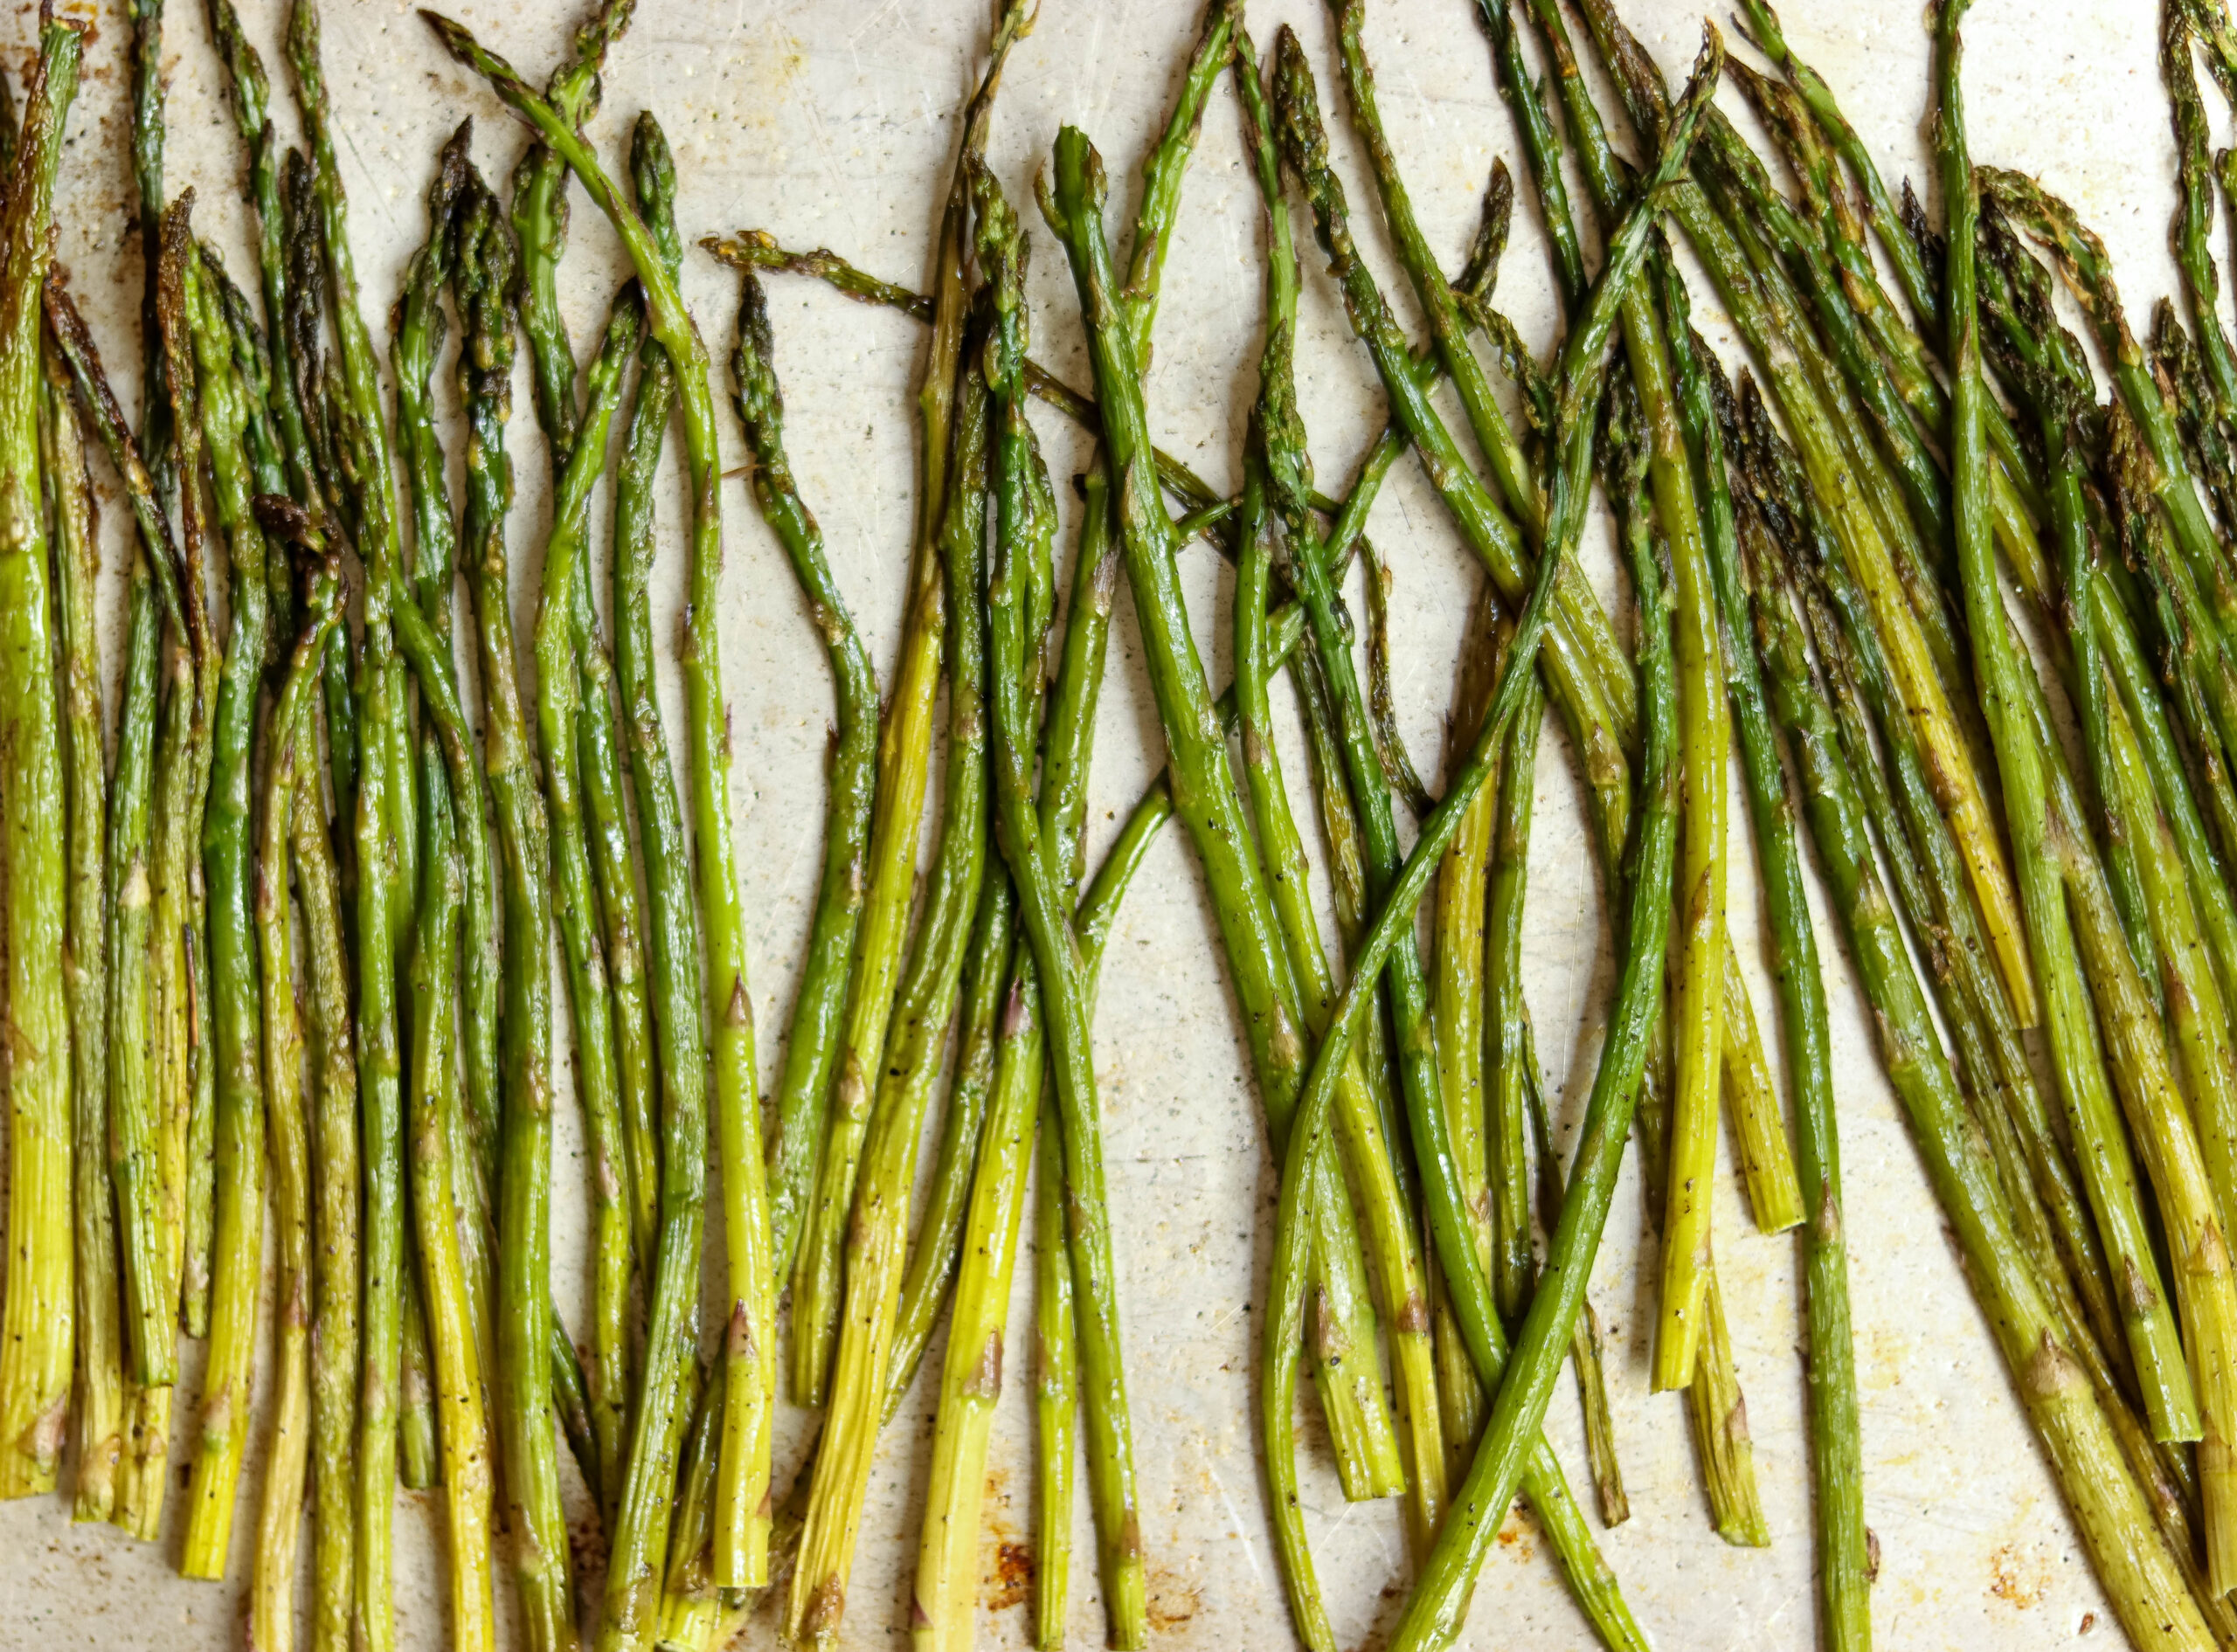 roasted asparagus on a sheet pan